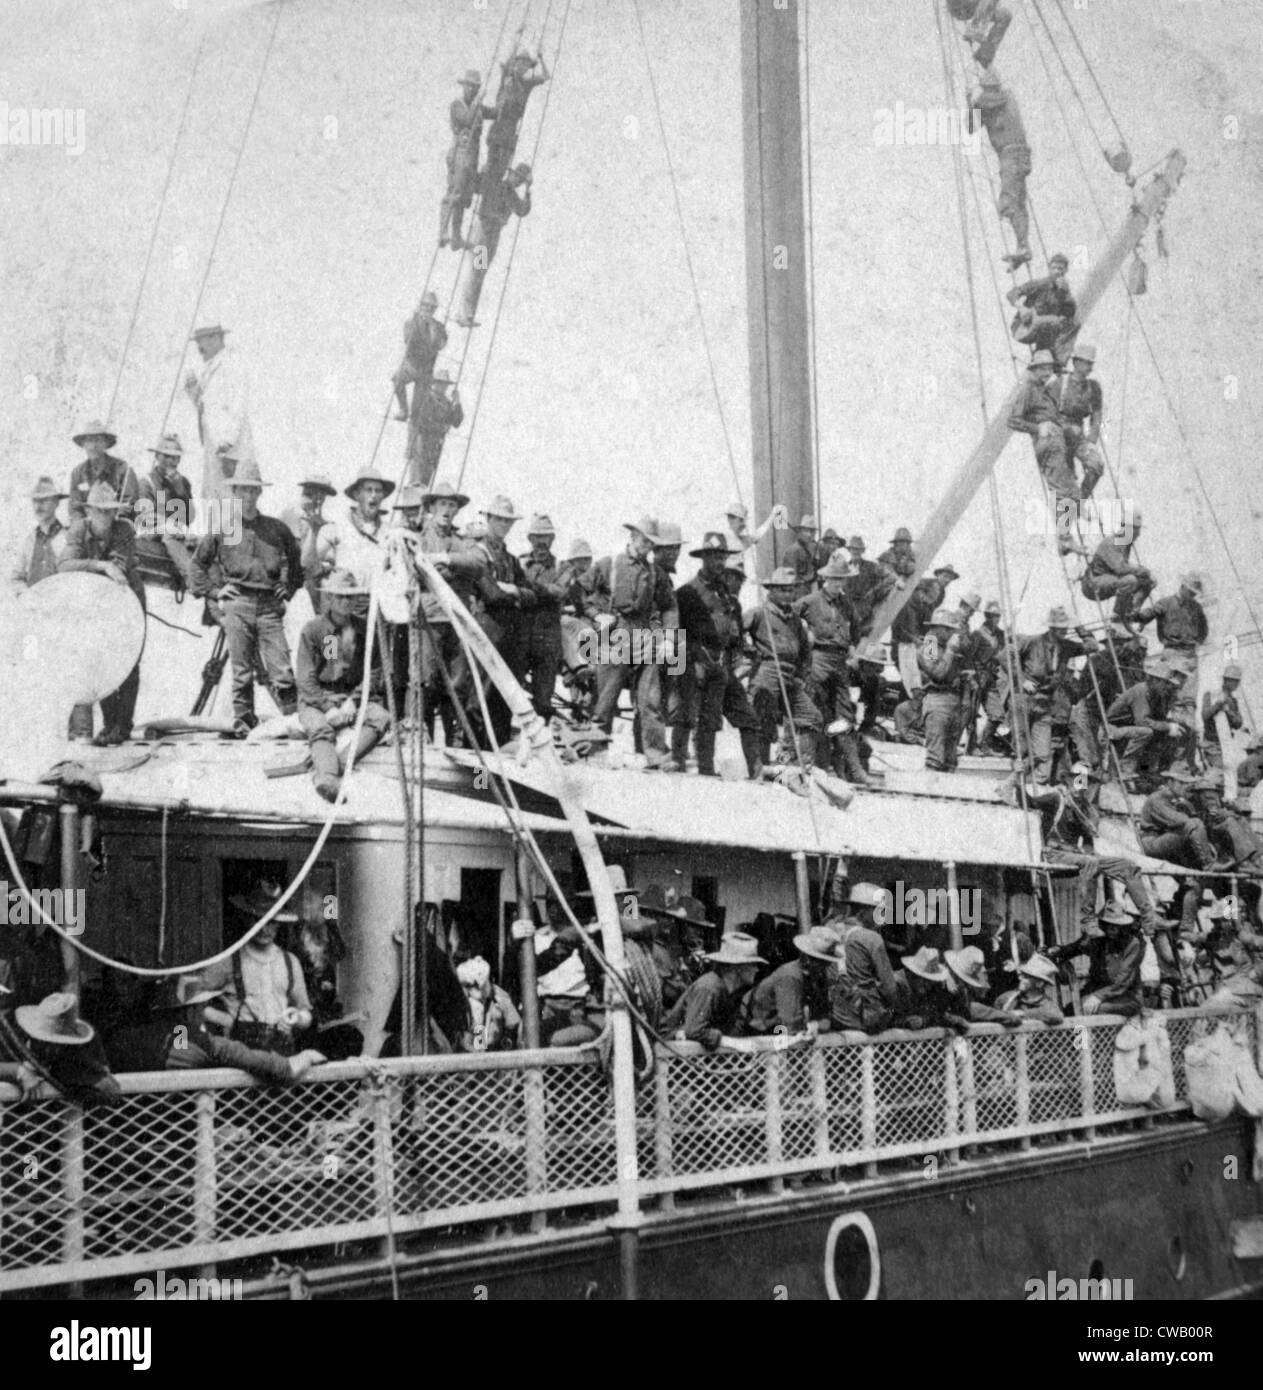 La guerre hispano-américaine (avril-août 1898), le Yucatan transportant les Rough Riders de Roosevelt à Cuba, 1898. Stéréo de l'albumen Banque D'Images